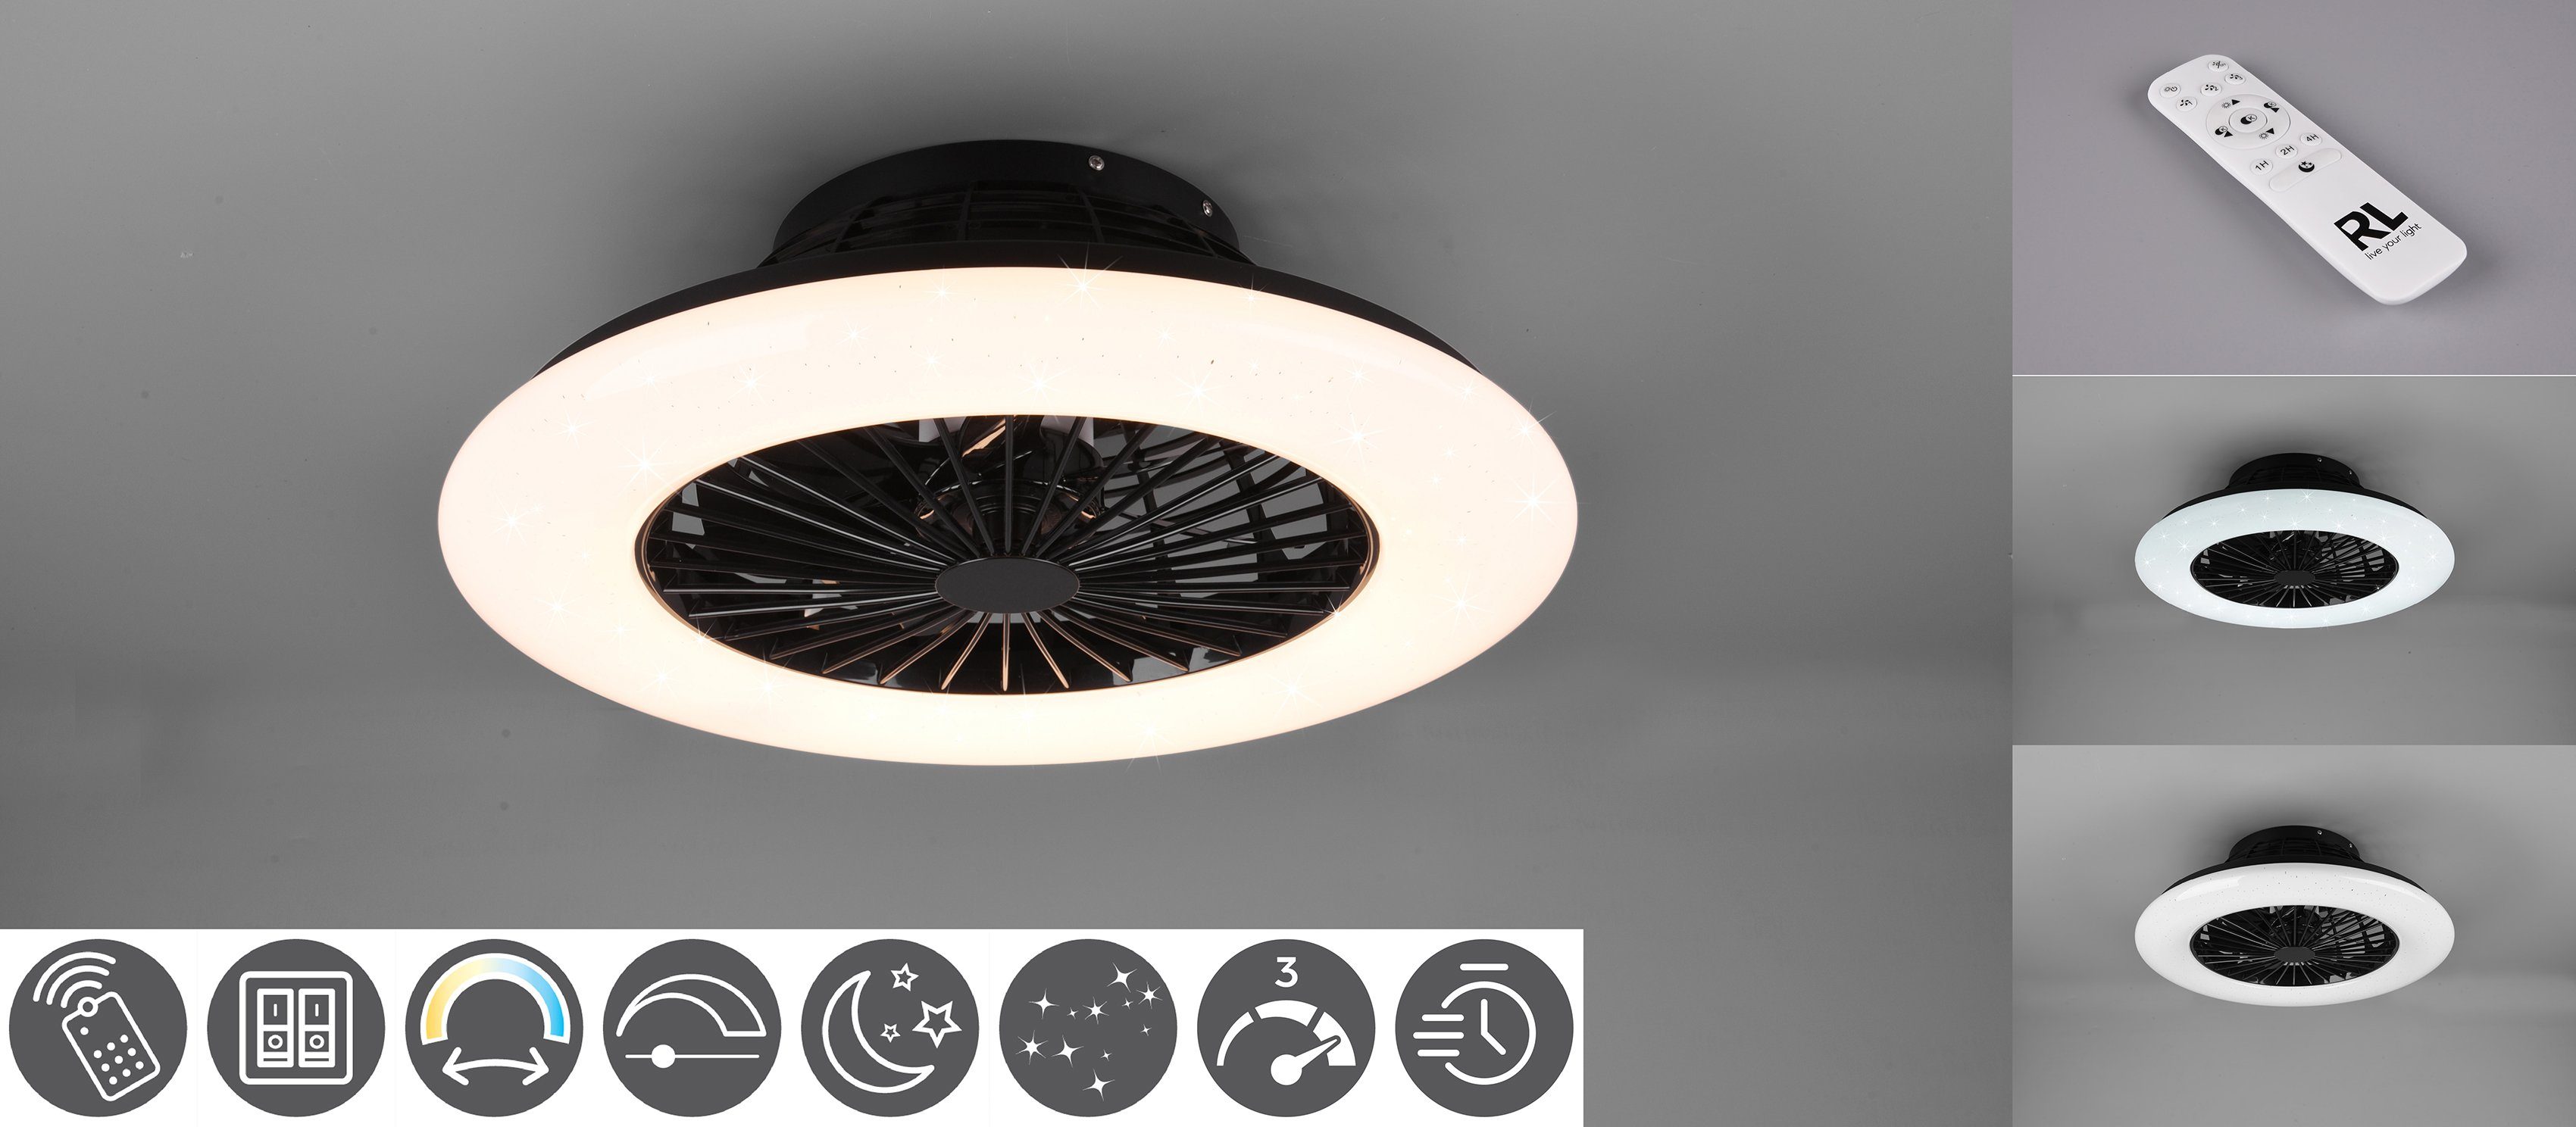 TRIO Leuchten LED matt Neutralweiß, Stralsund, mit getrennt Ventilator Ventilator, Deckenleuchte integriert, Fernbedienung., schaltbar schwarz Ventilatorfunktion, Timerfunktion, LED fest Leuchte